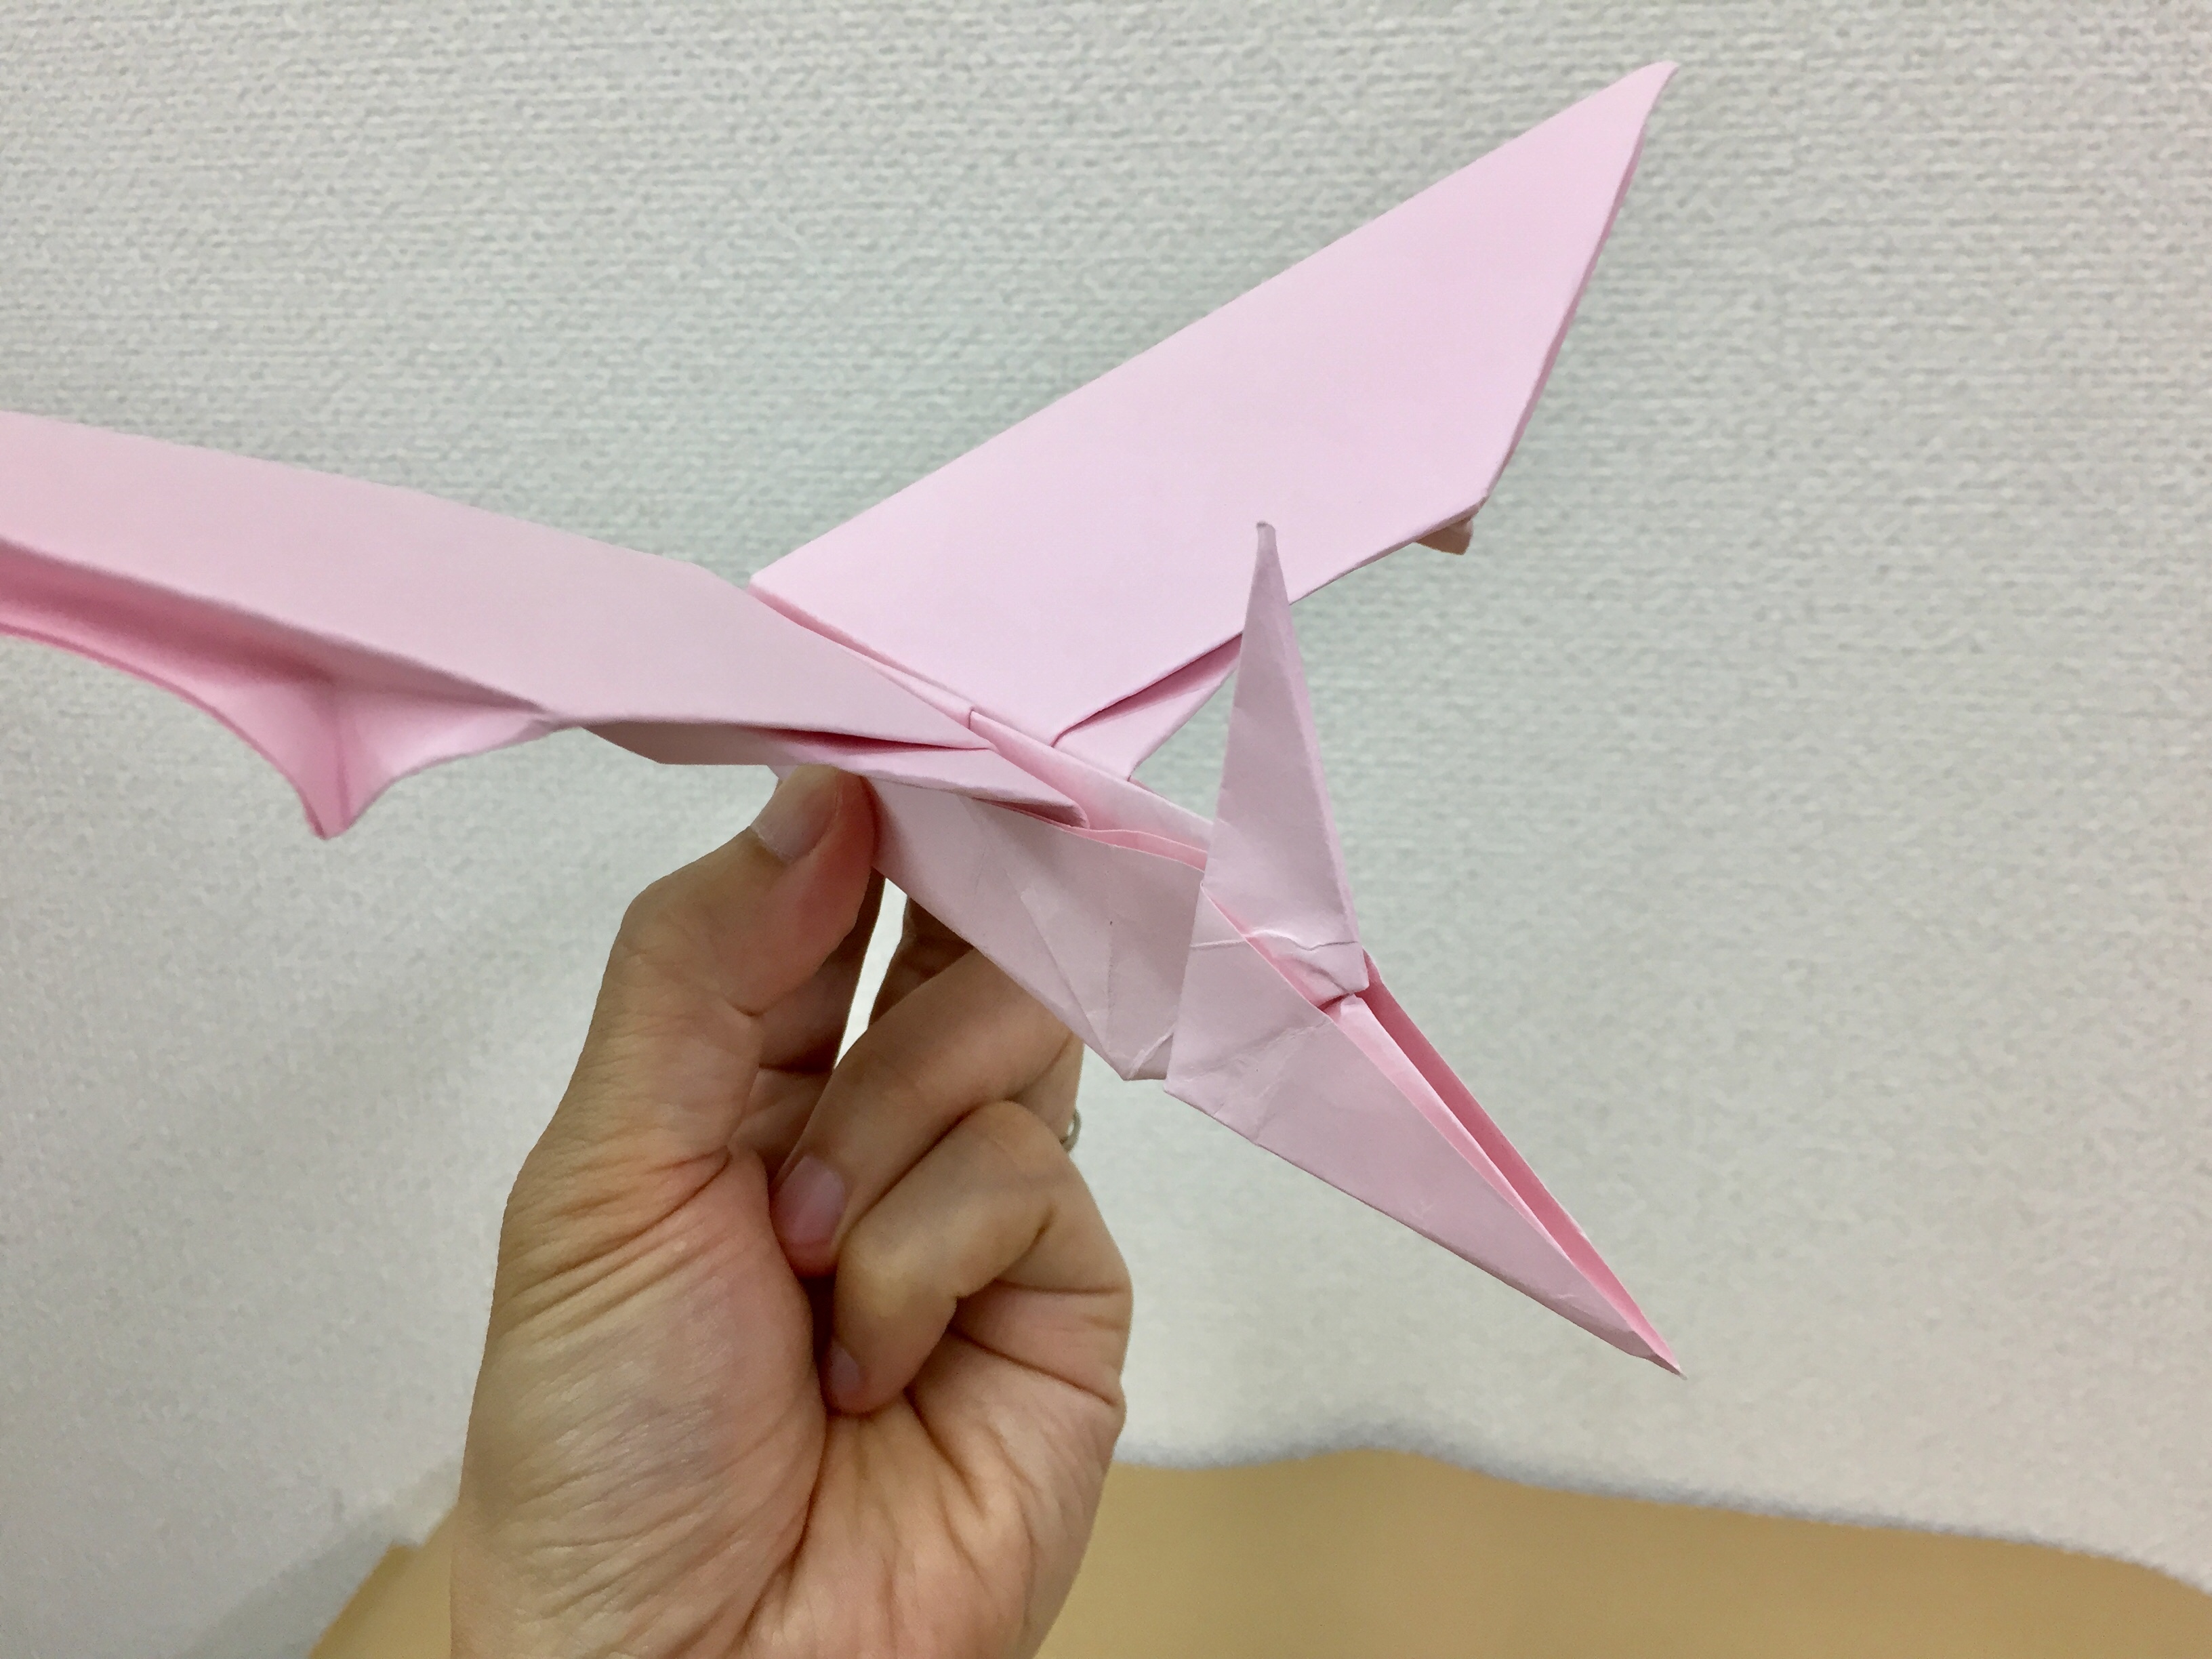 みんな大好きな恐竜を折り紙で折ってみよう 翼竜プテラノドンの折り方